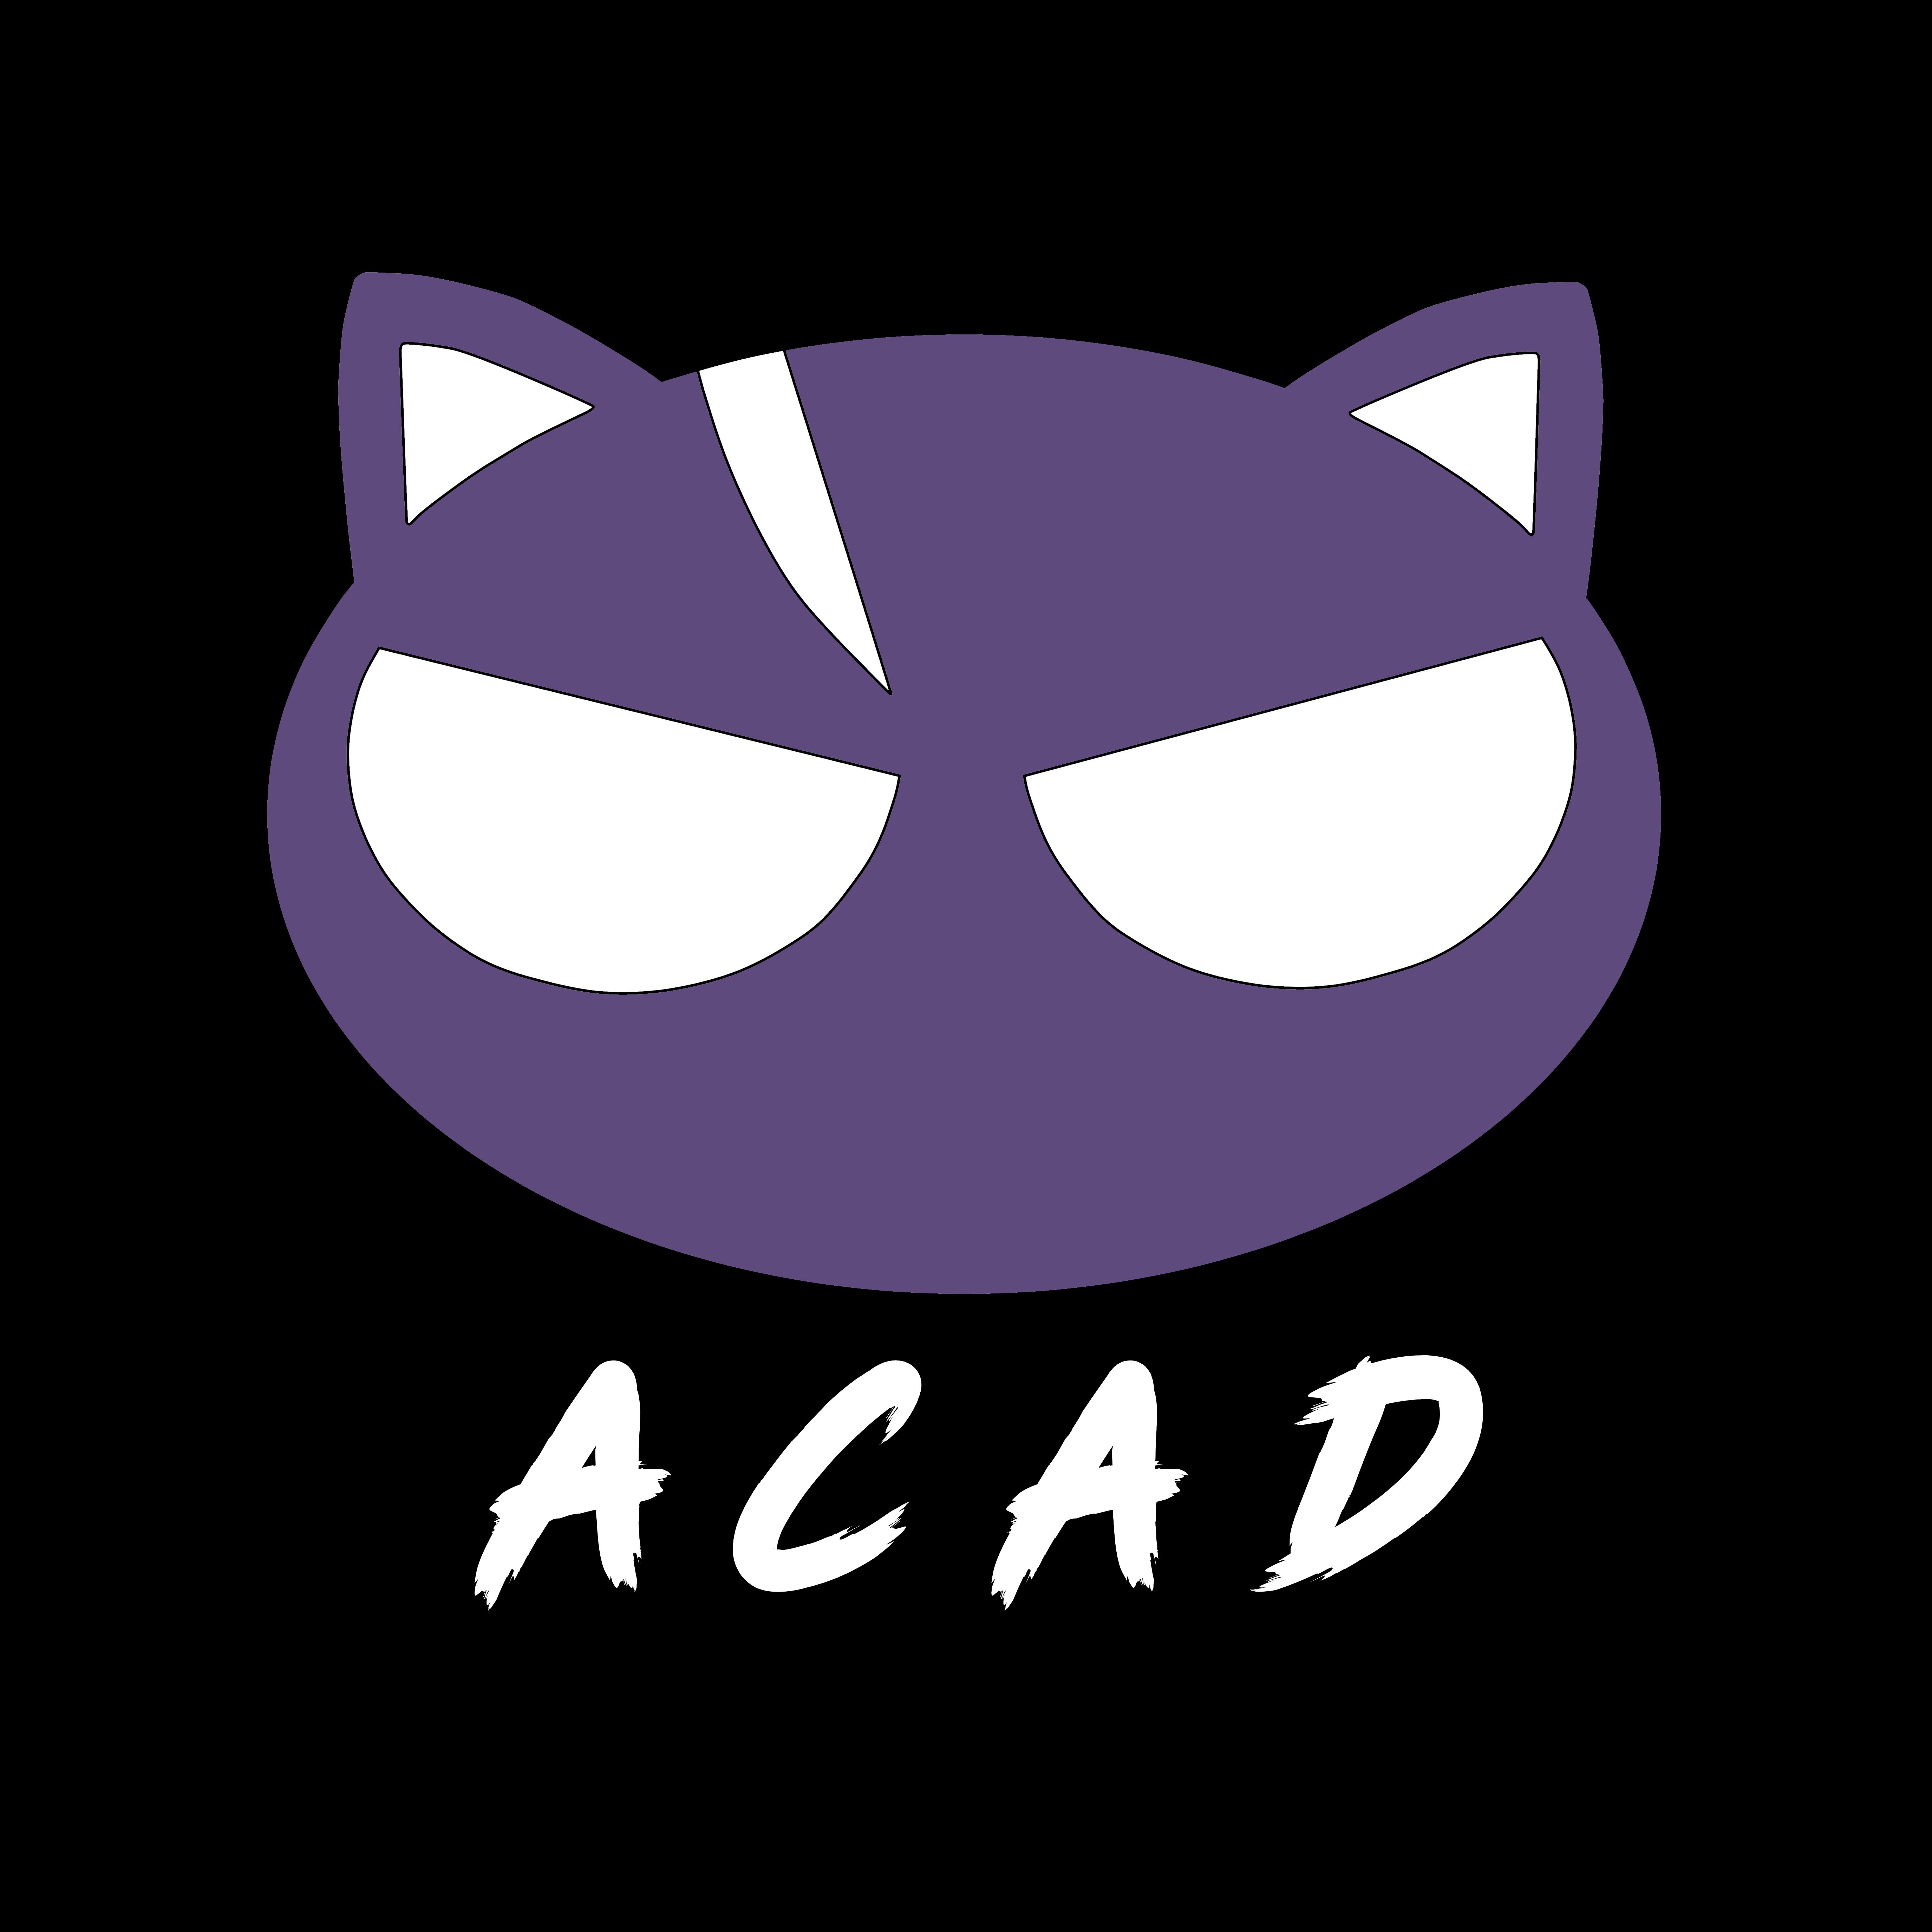 ACAD! ASSEMBLE! | ACAD Episode 173